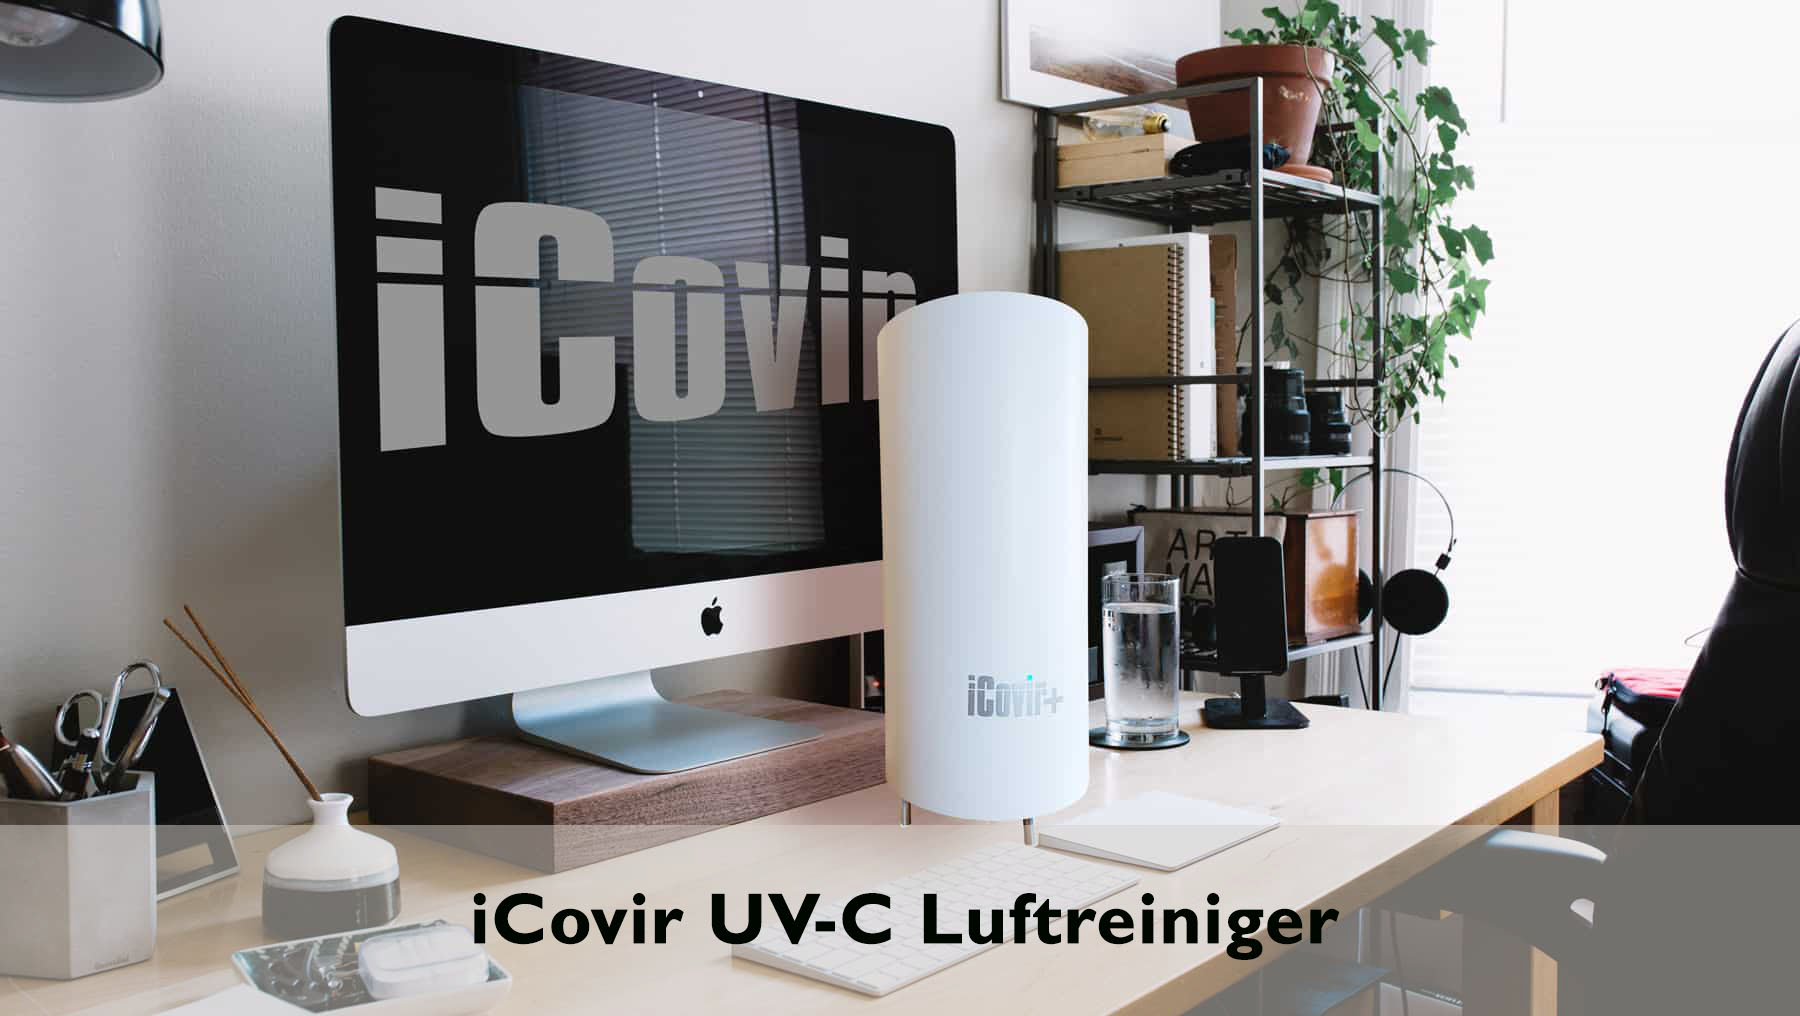 iCovir UV-C Luftreiniger